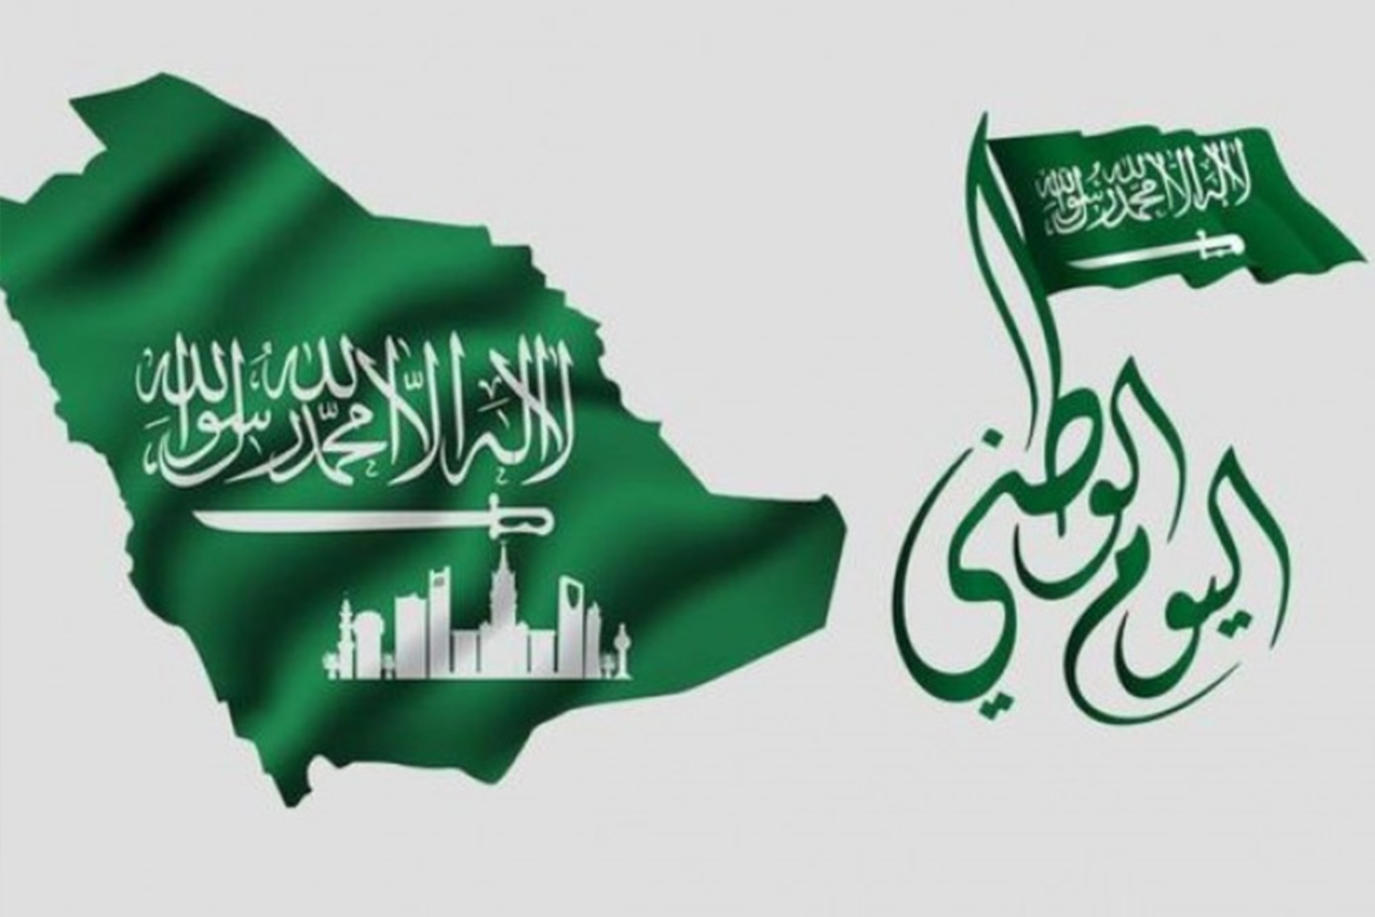 عبارات تهنئة باليوم الوطني السعودي وأجمل صورعن اليوم الوطني 91 تحت شعار ( هي لنا دار )